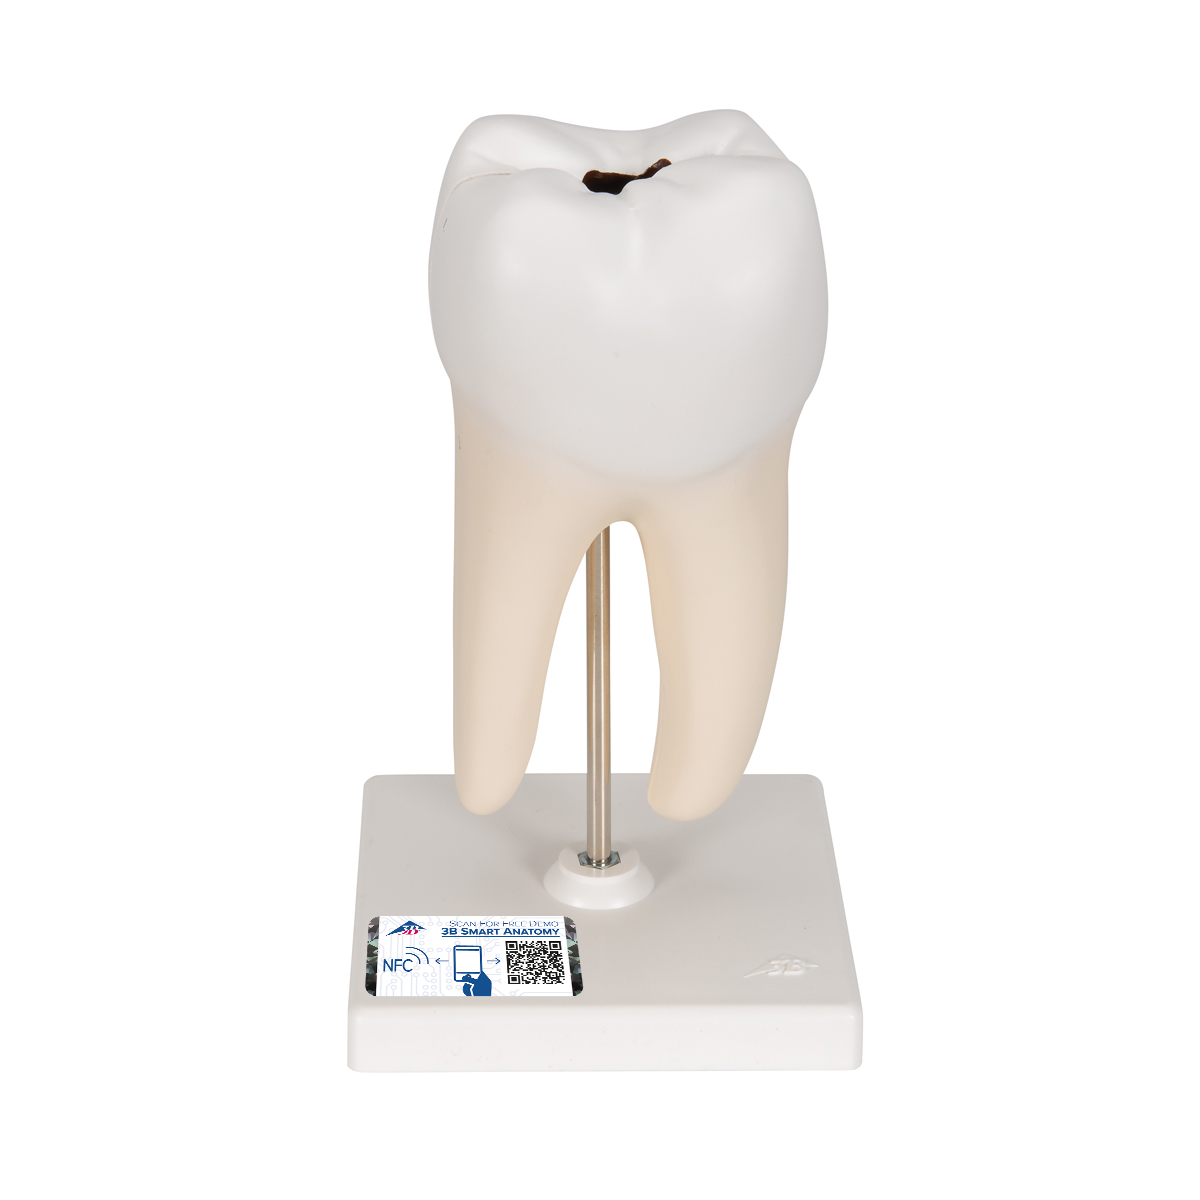 Zahn Modell Unterer Zweiwurzeliger Molar mit Karies, 2-teilig - 3B Smart Anatomy, Bestellnummer 1000243, D10/4, 3B Scientific